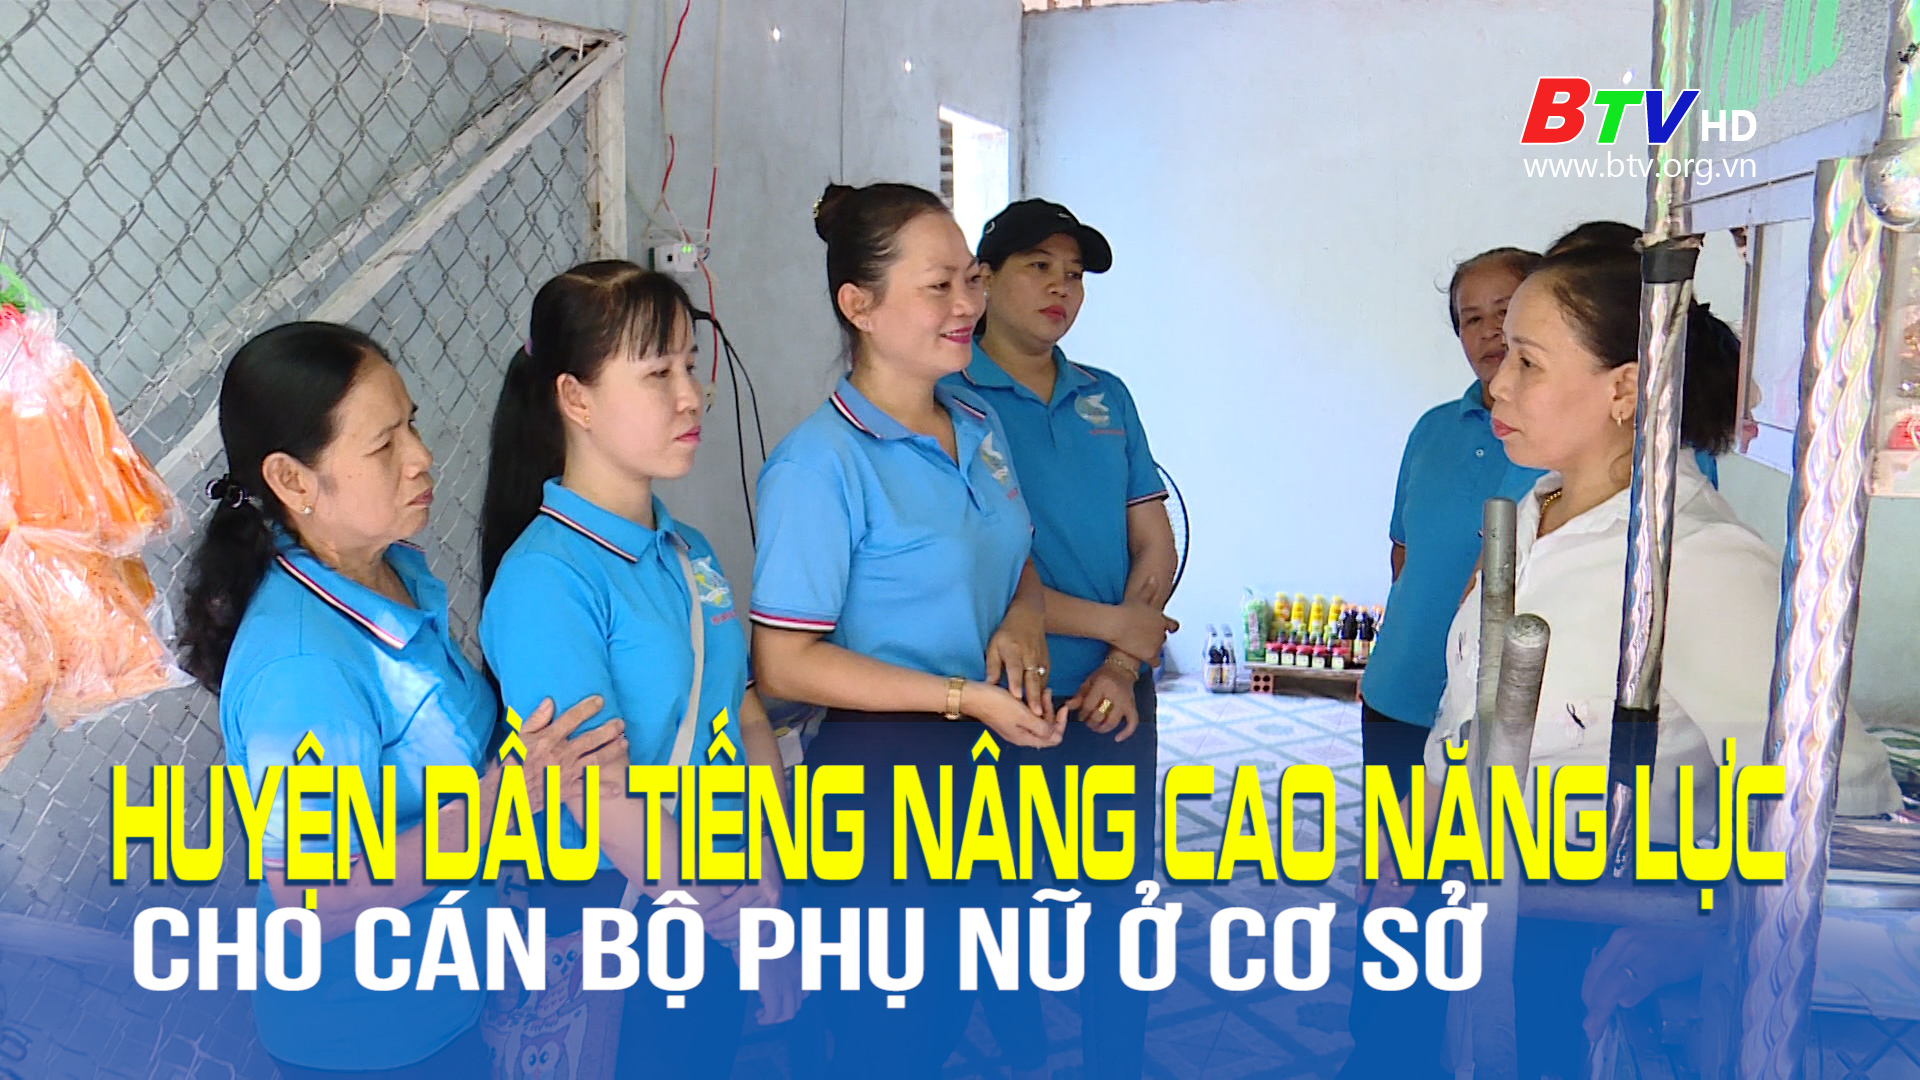 Huyện Dầu Tiếng nâng cao năng lực cho cán bộ phụ nữ ở cơ sở